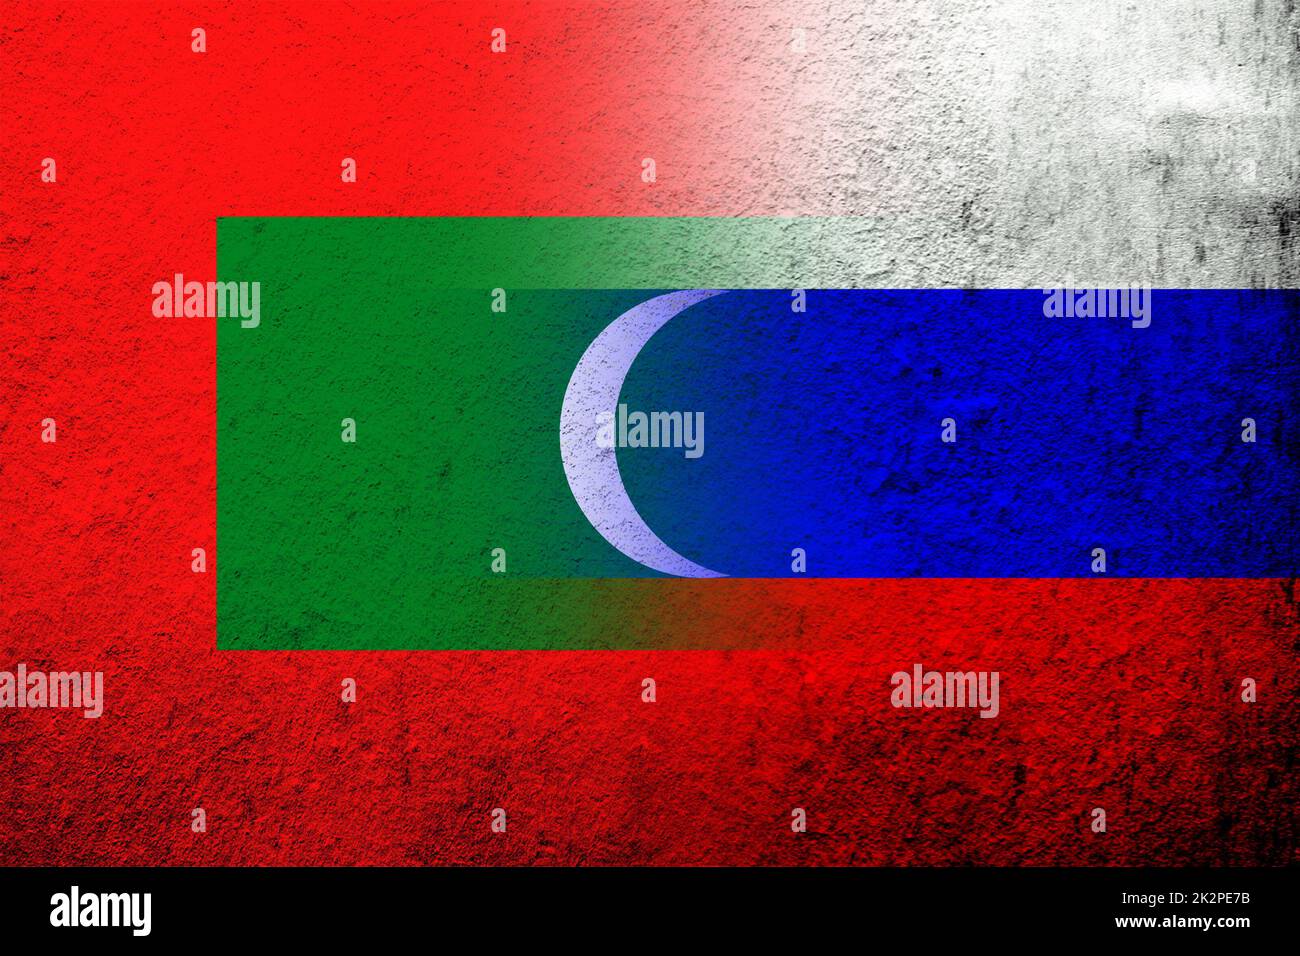 Drapeau national de la Fédération de Russie avec la République des Maldives drapeau national. Grunge l'arrière-plan Banque D'Images